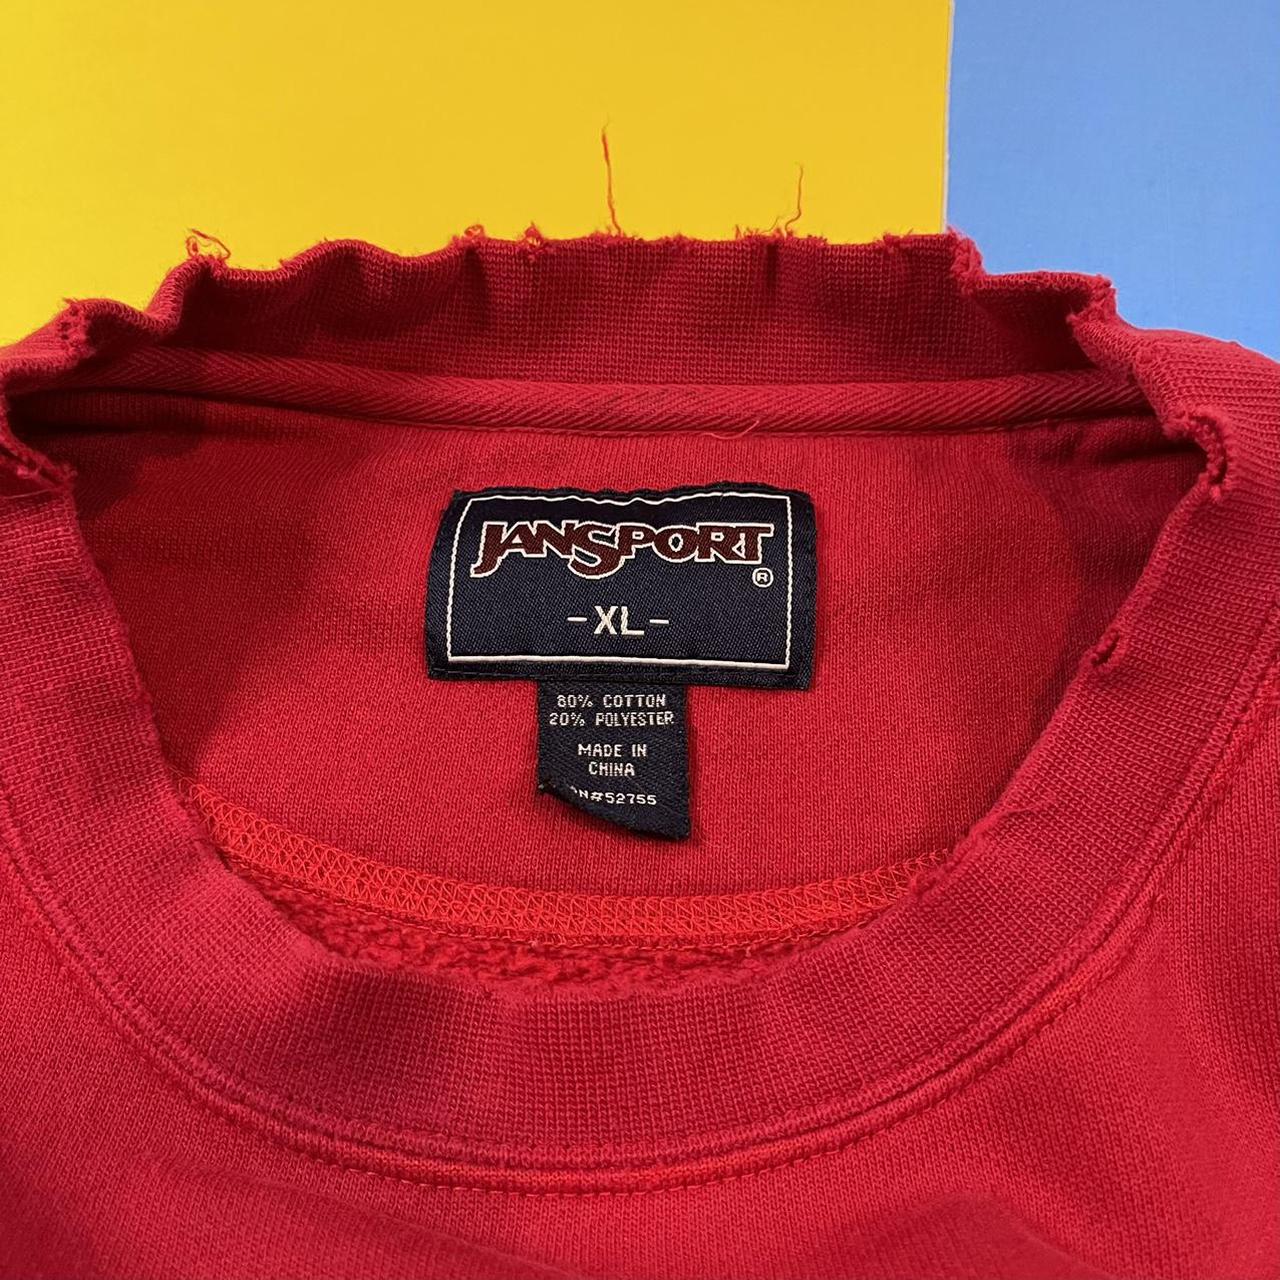 Vintage distressed Cabela’s sweatshirt. Dark red... - Depop